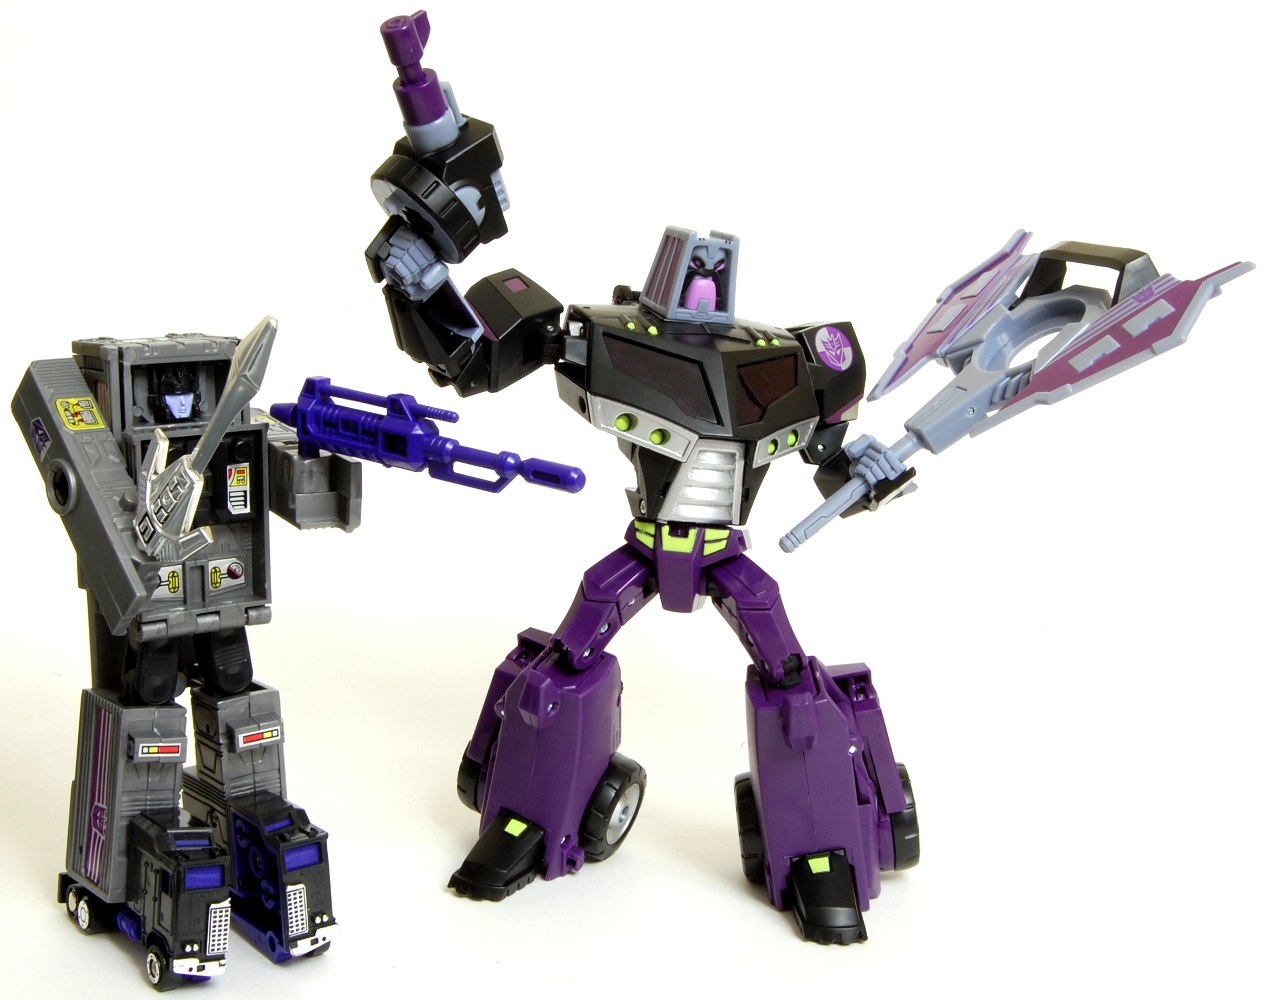 Купить трансформеры в симферополе. Transformers Motormaster g1 Toy. Трансформеры g1 Эффектиконы игрушки. Мегазавр трансформер g2. Трансформер игрушка g1 Decepticon.